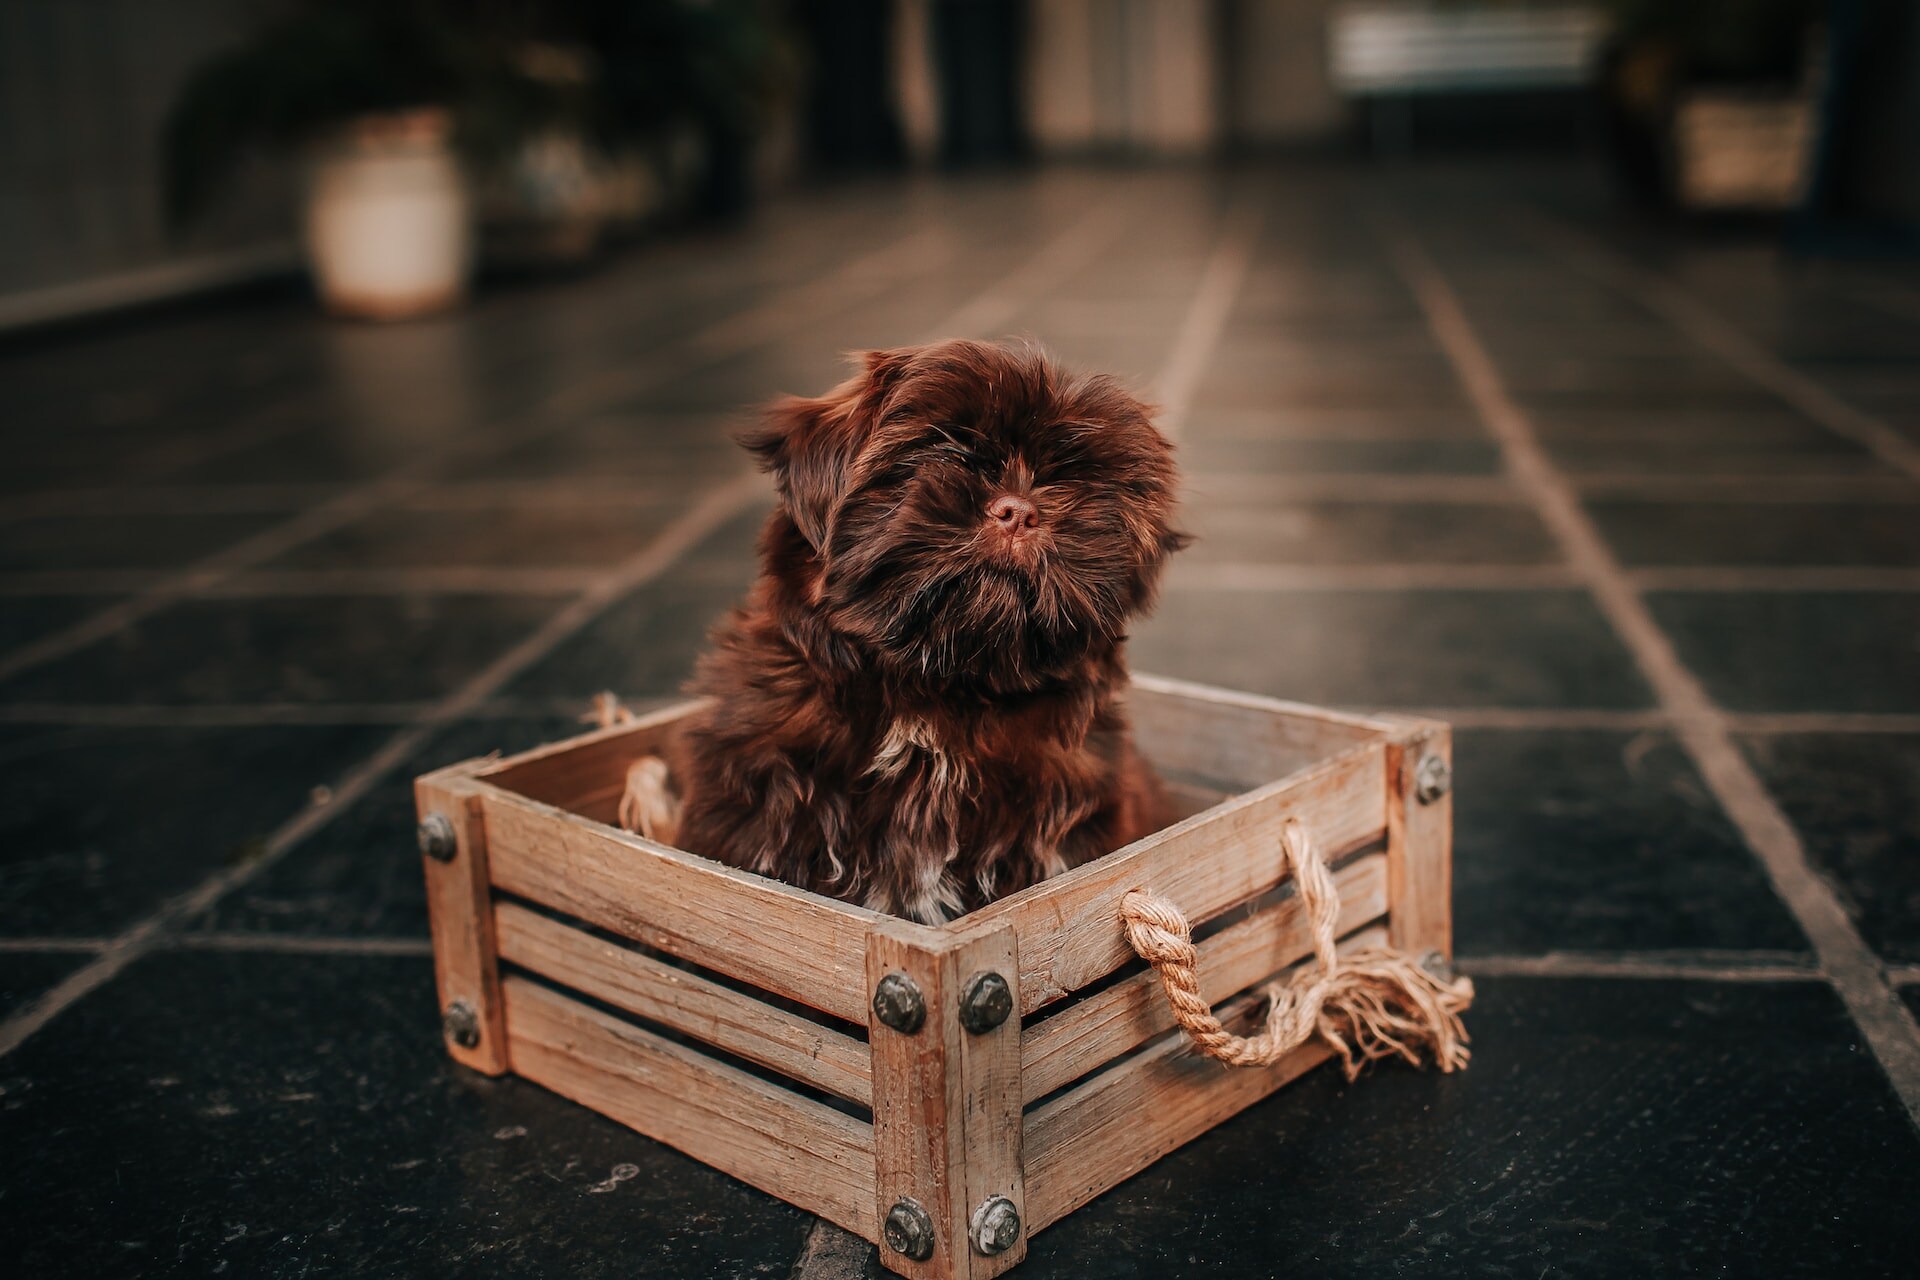 Un perro pequeño marrón sentado en una caja de madera en un espacio interior.